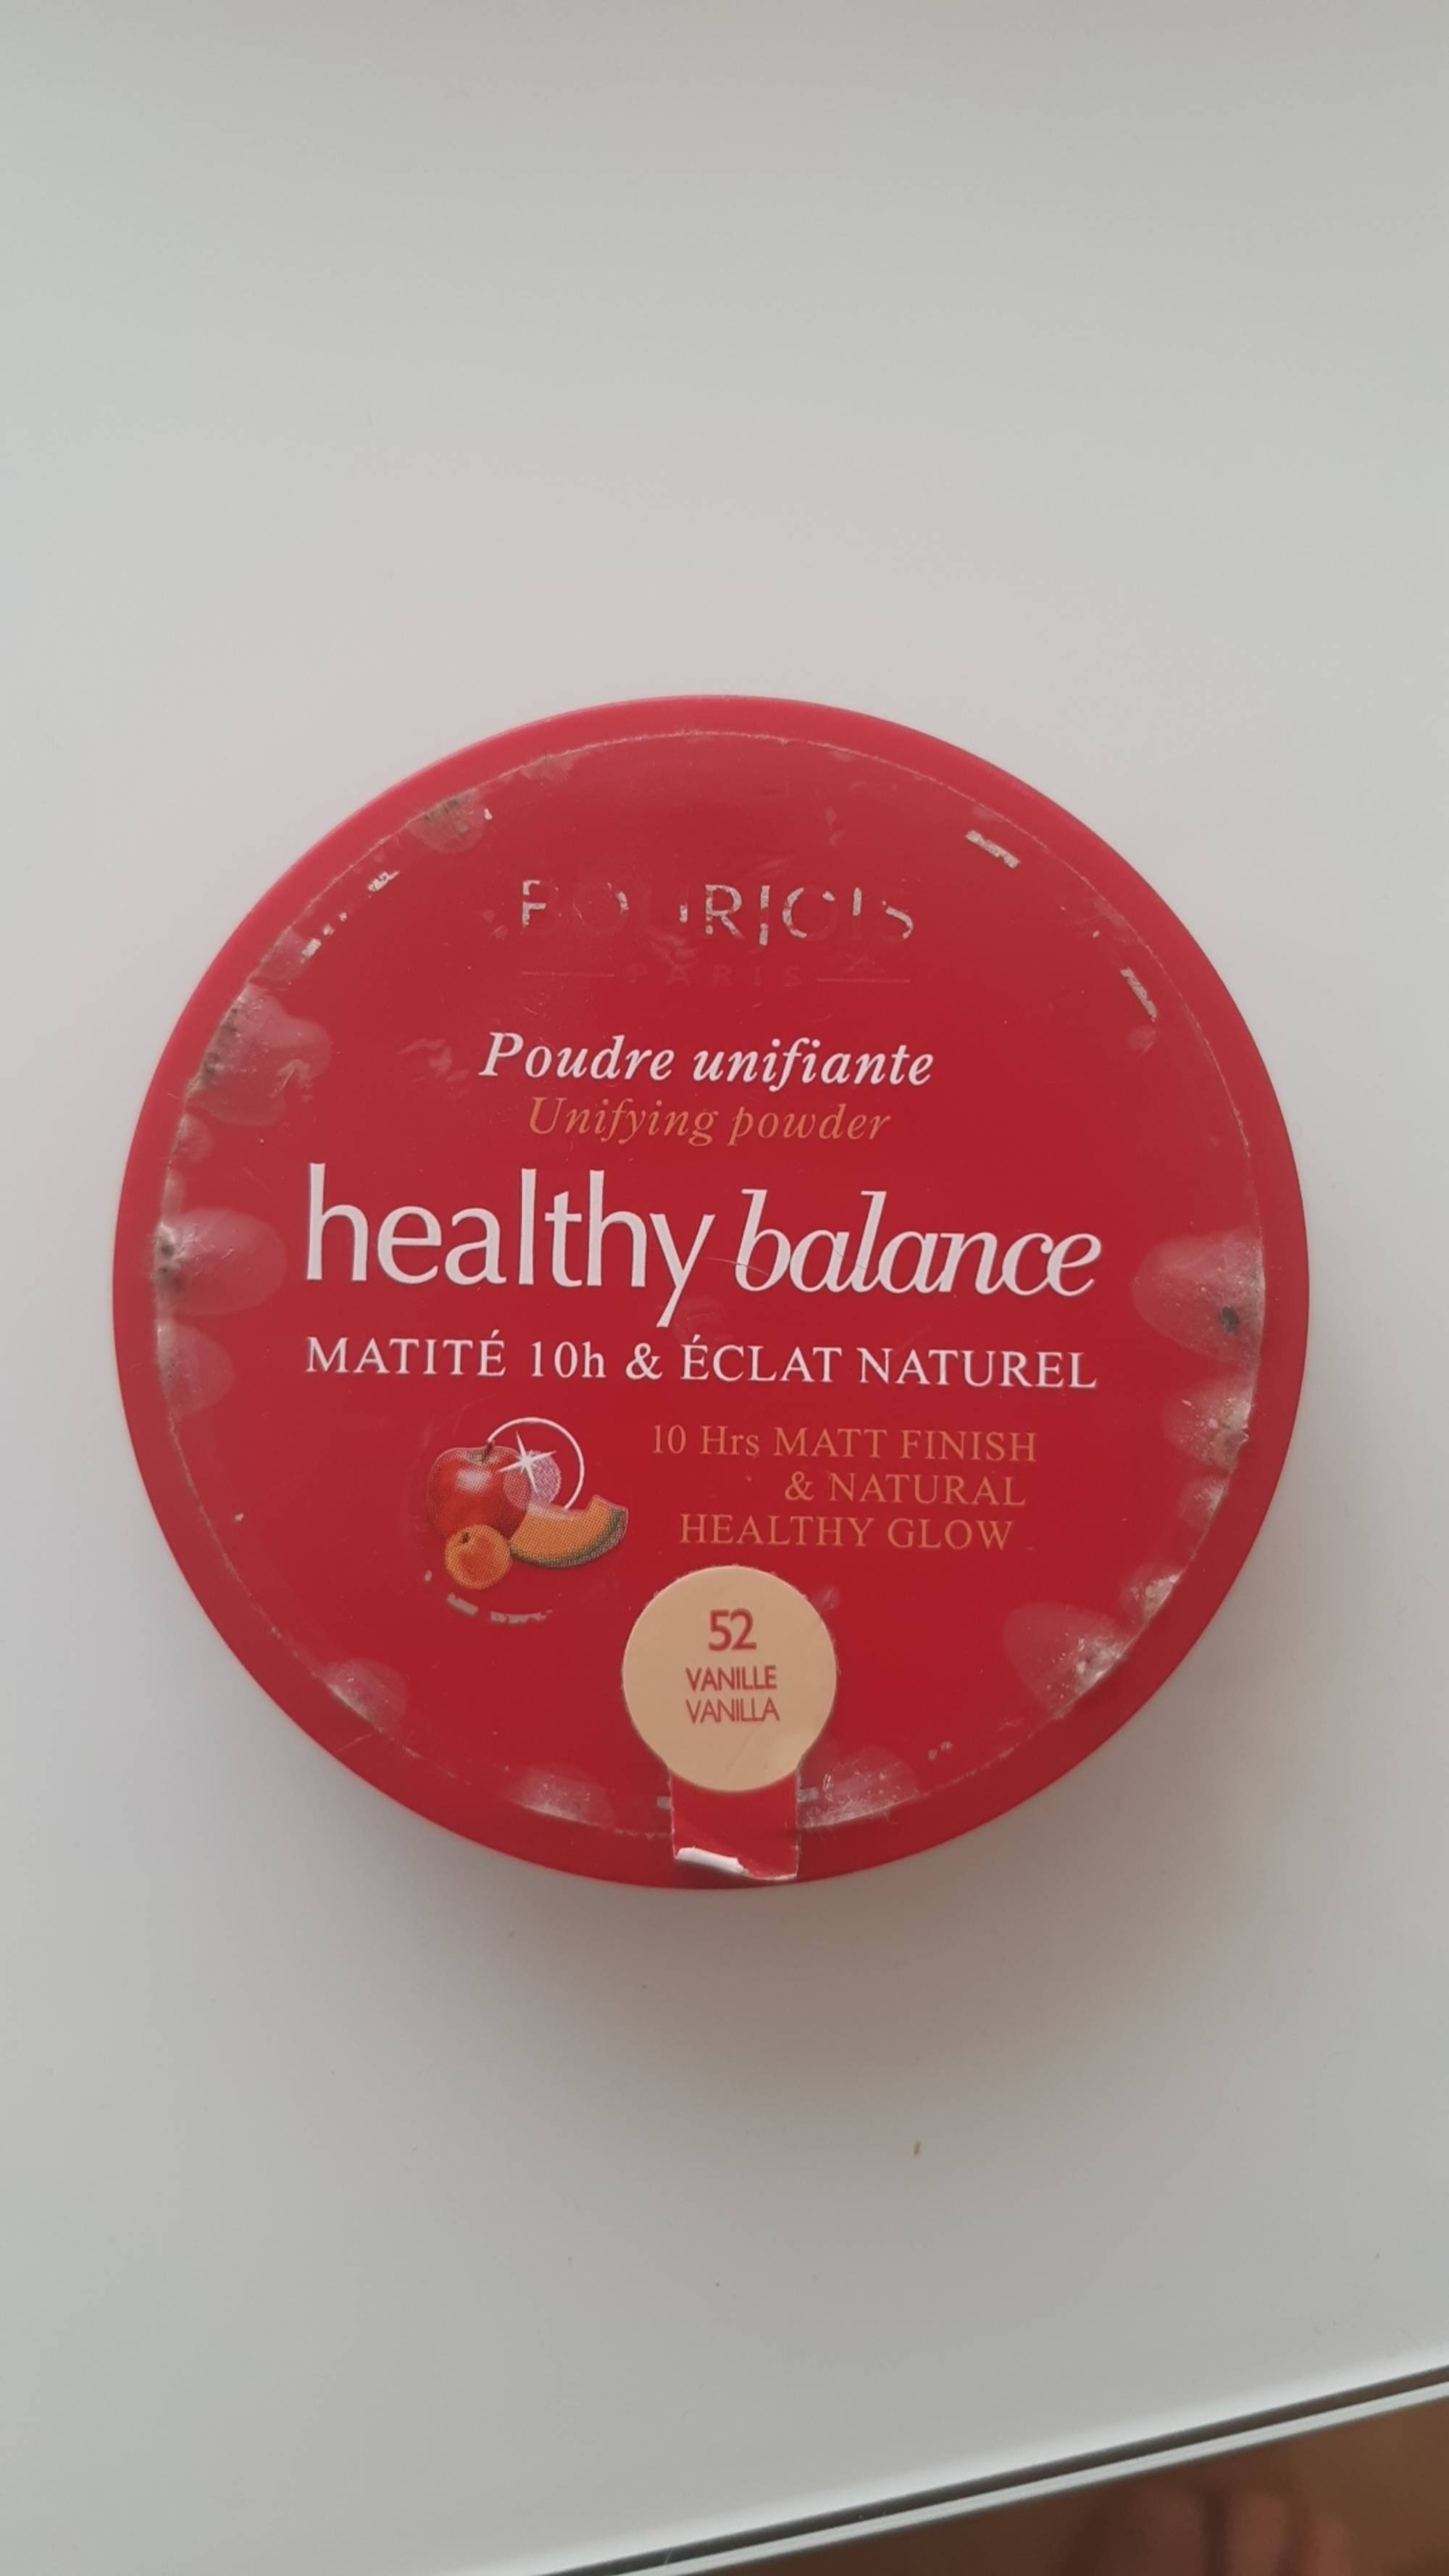 BOURJOIS - Healthy balance - Poudre unifiante 52 vanille